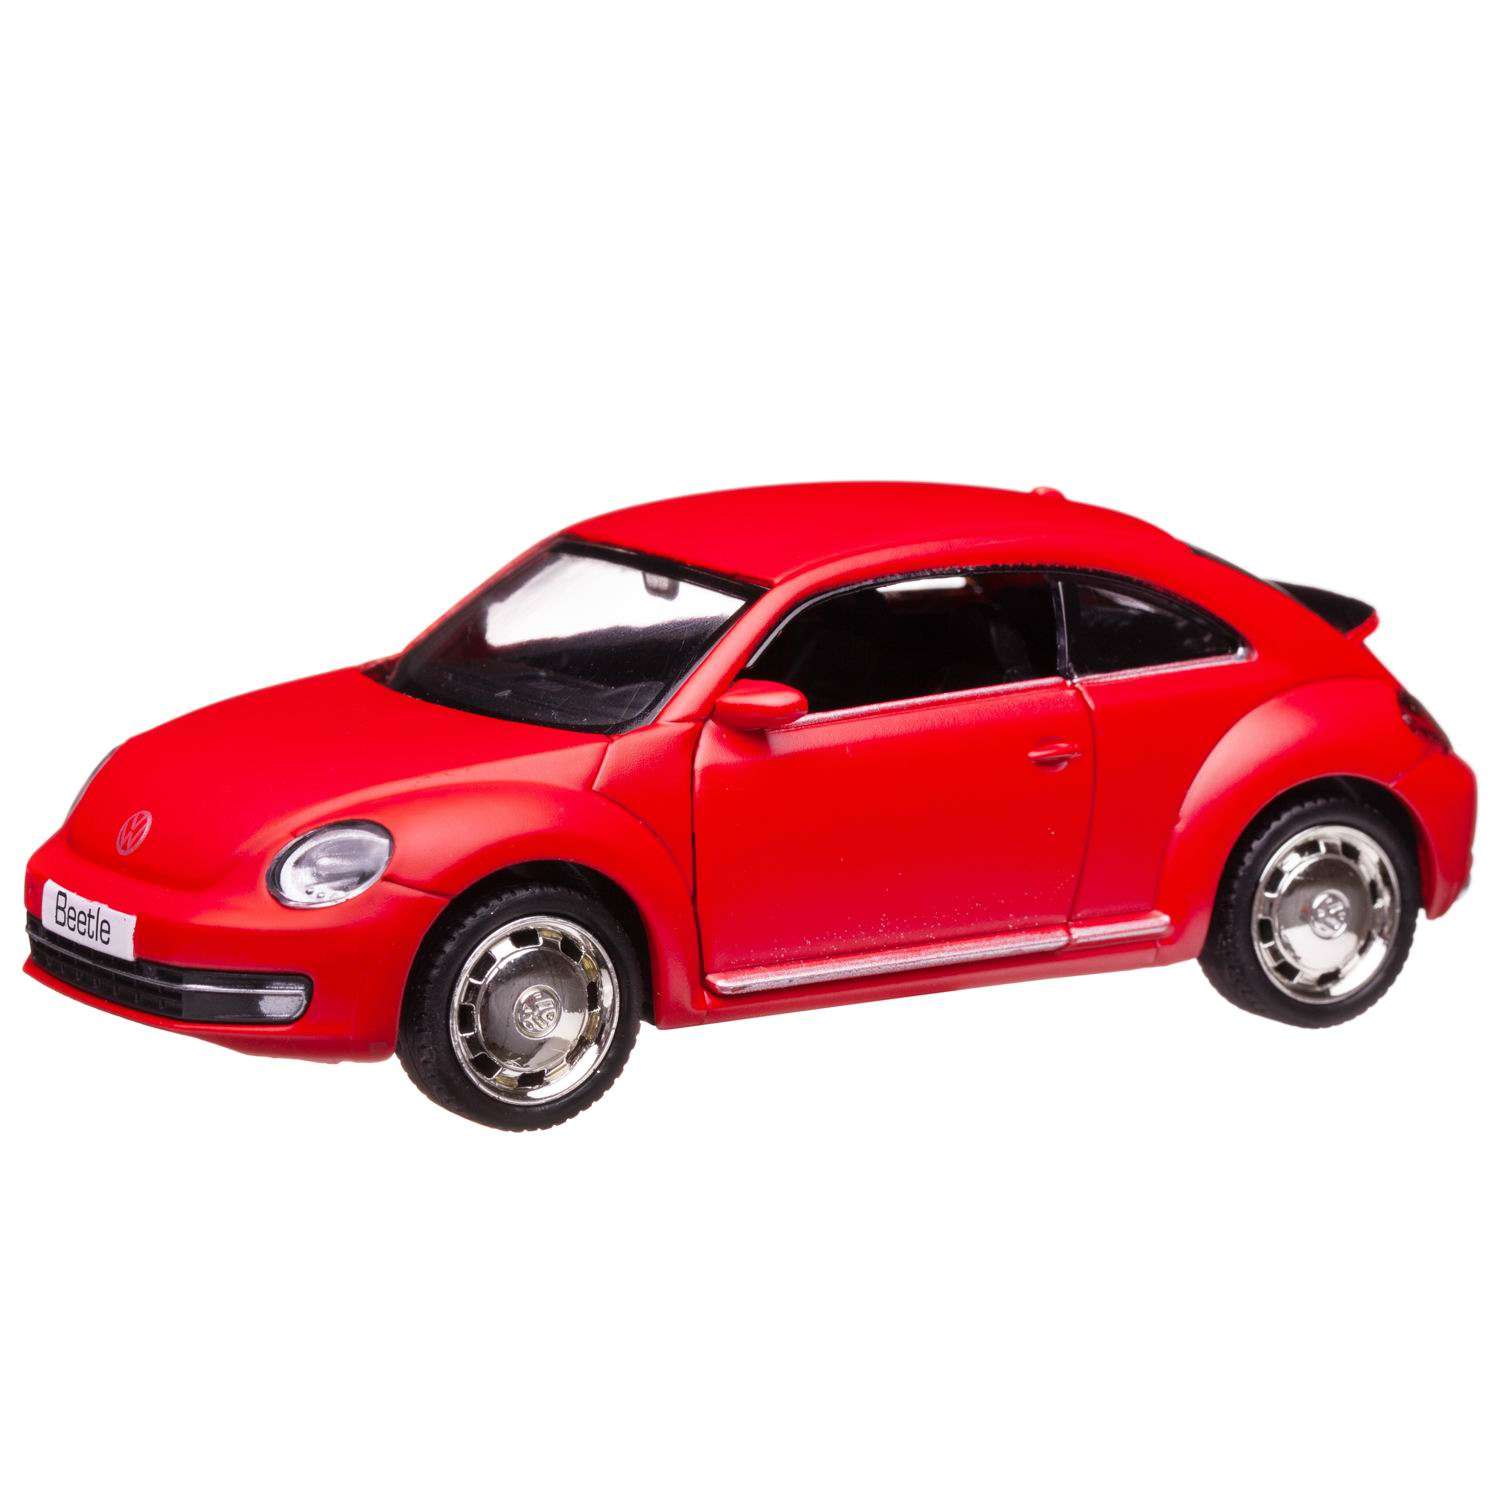 Машина металлическая Uni-Fortune Volkswagen New Beetle 2012 инерционная красная матовая двери открываются 554023M(A) - фото 1